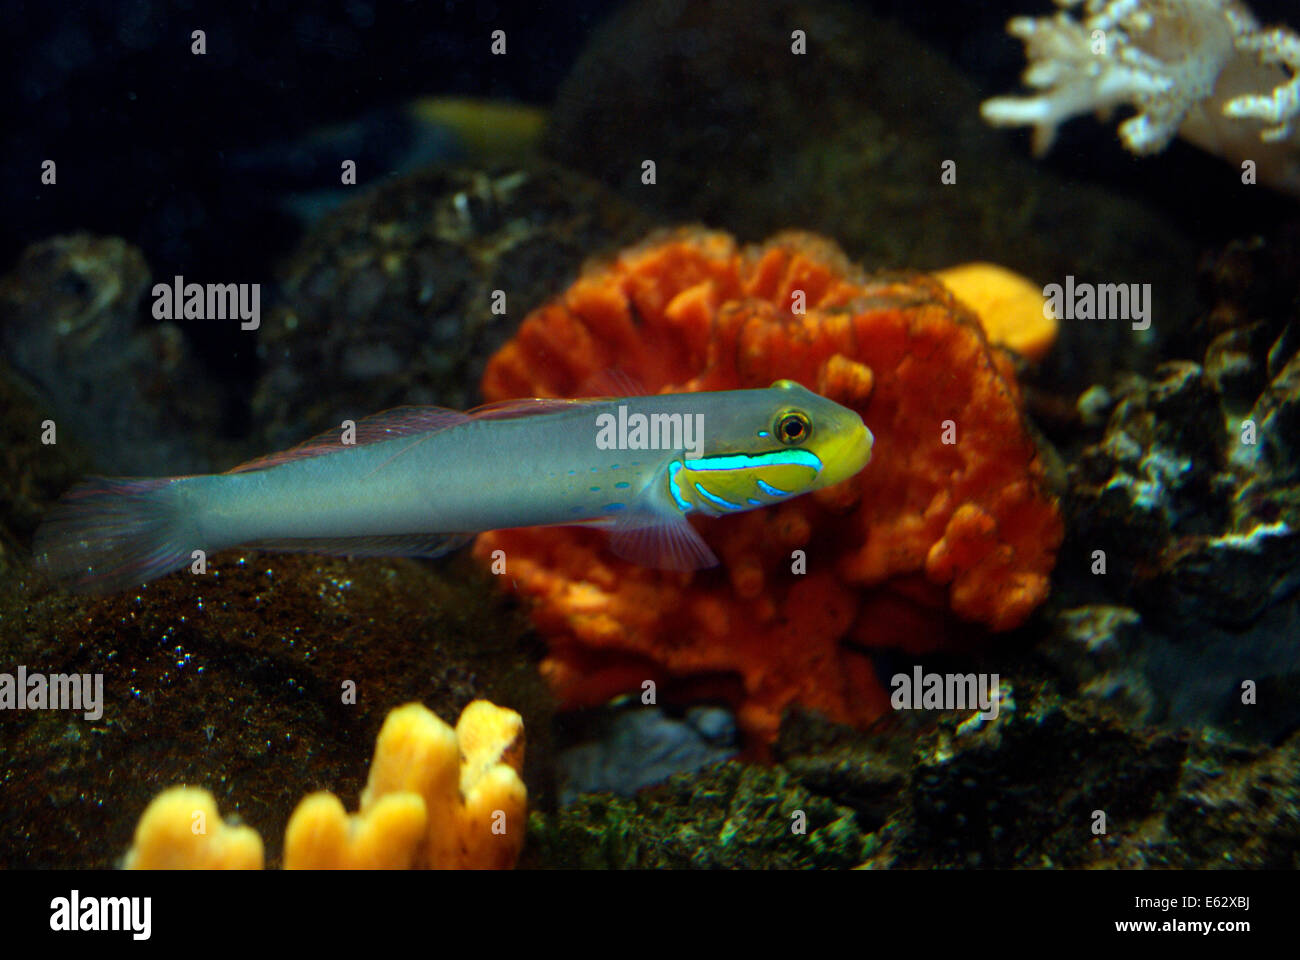 Fish swimming Yellowheaded sleeper goby aquatic fish underwater nearby marine sponge Axinella carteri Stock Photo